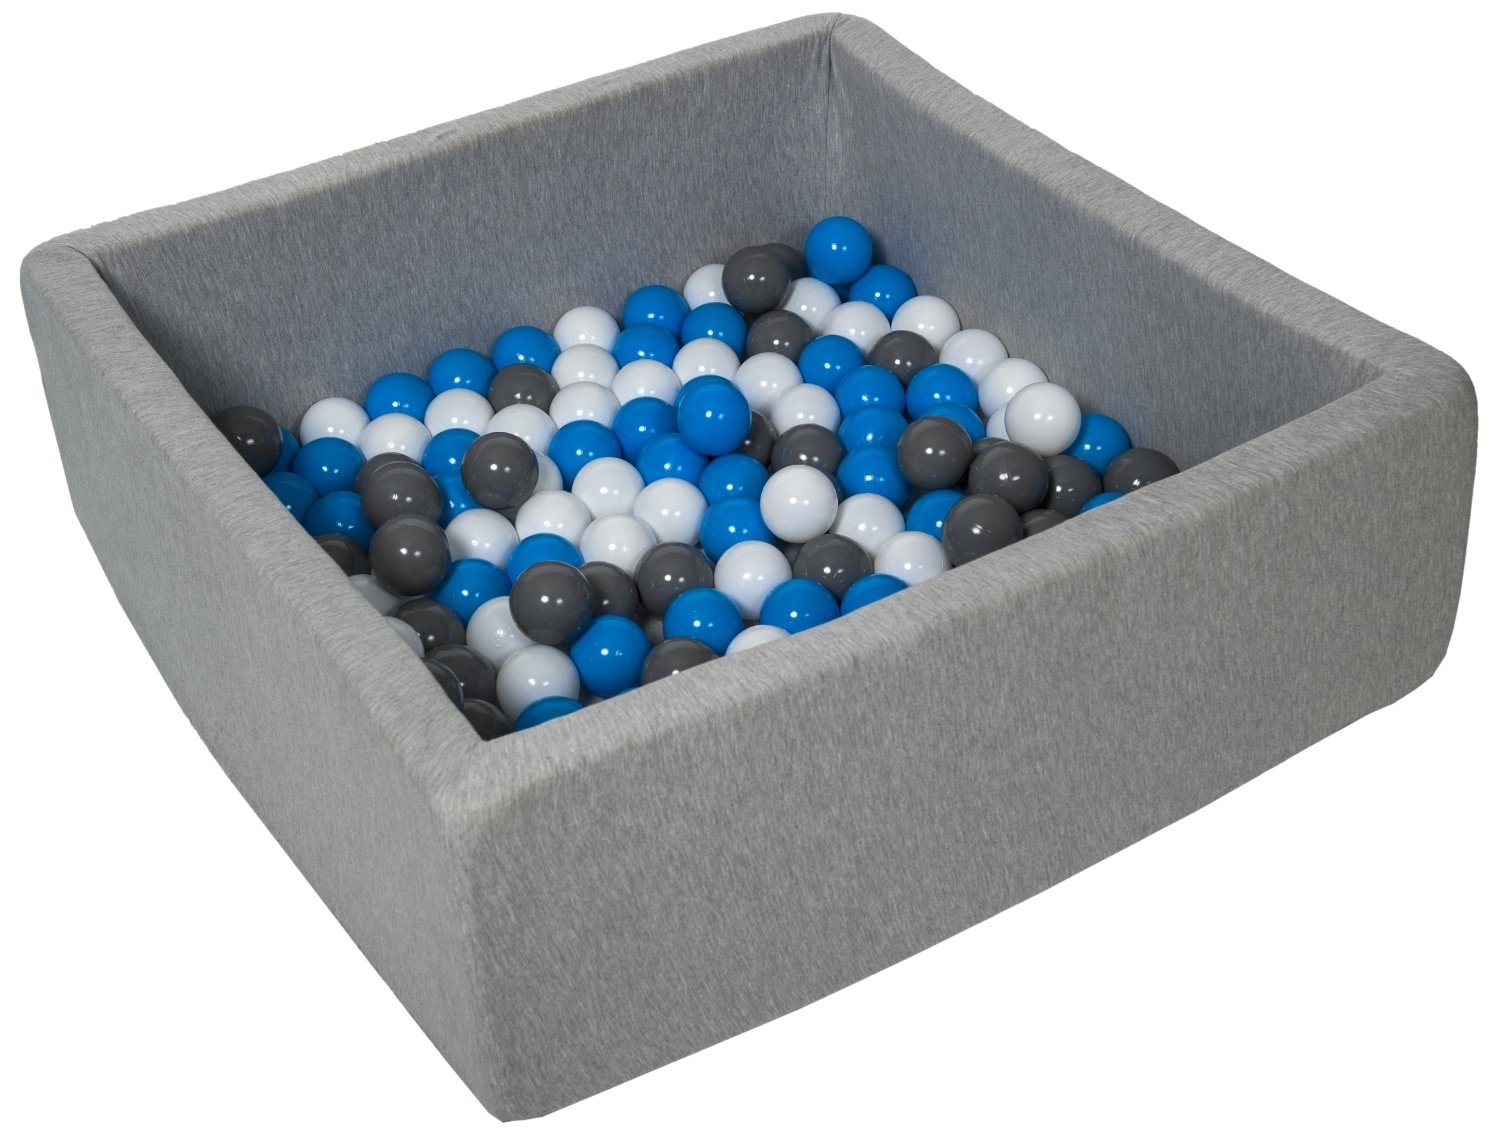 Piscine à balles carré pour bébé avec 150 balles 90x90cm gris clair balles turquoise